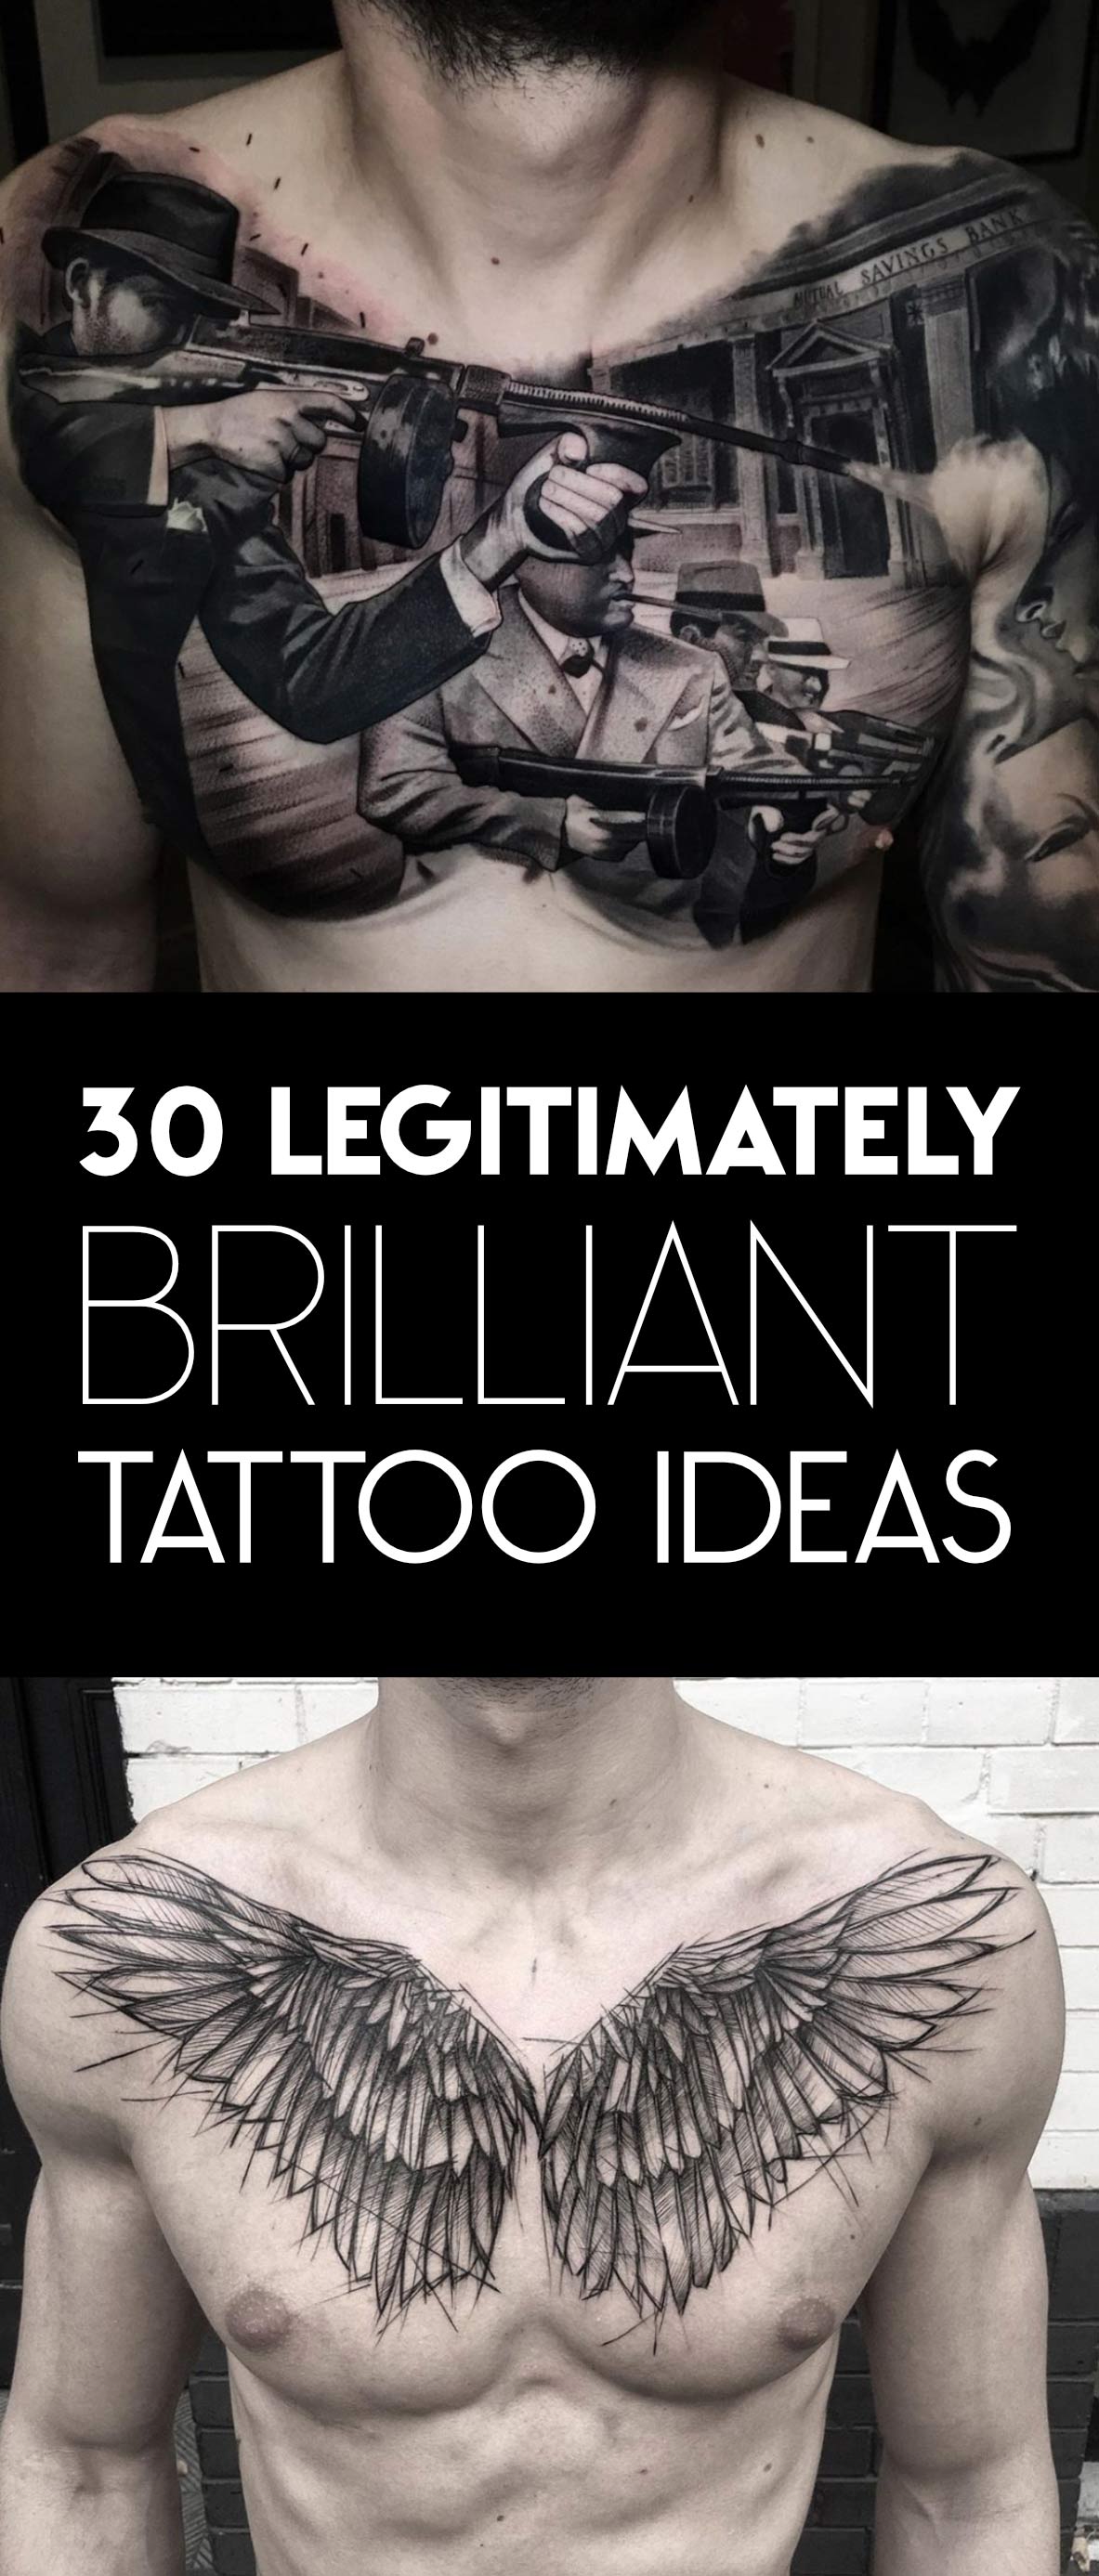 30 legitimately brilliant tattoos for men